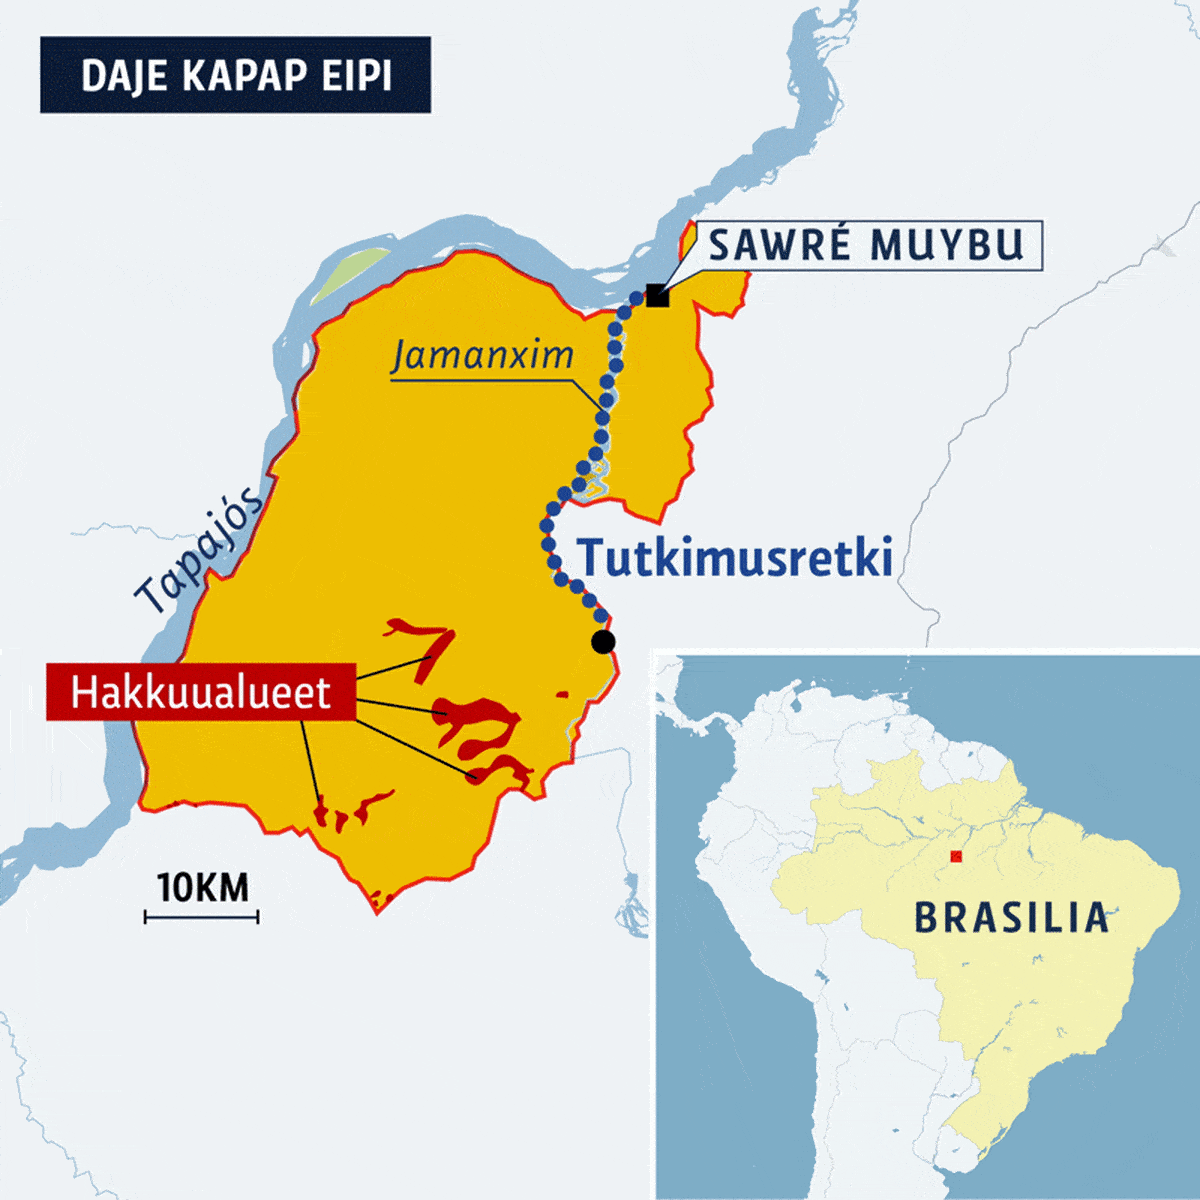 Kartta tutkimusretken reitistä Jamanxim-joella Daje Kapap Eipissä Brasiliassa.